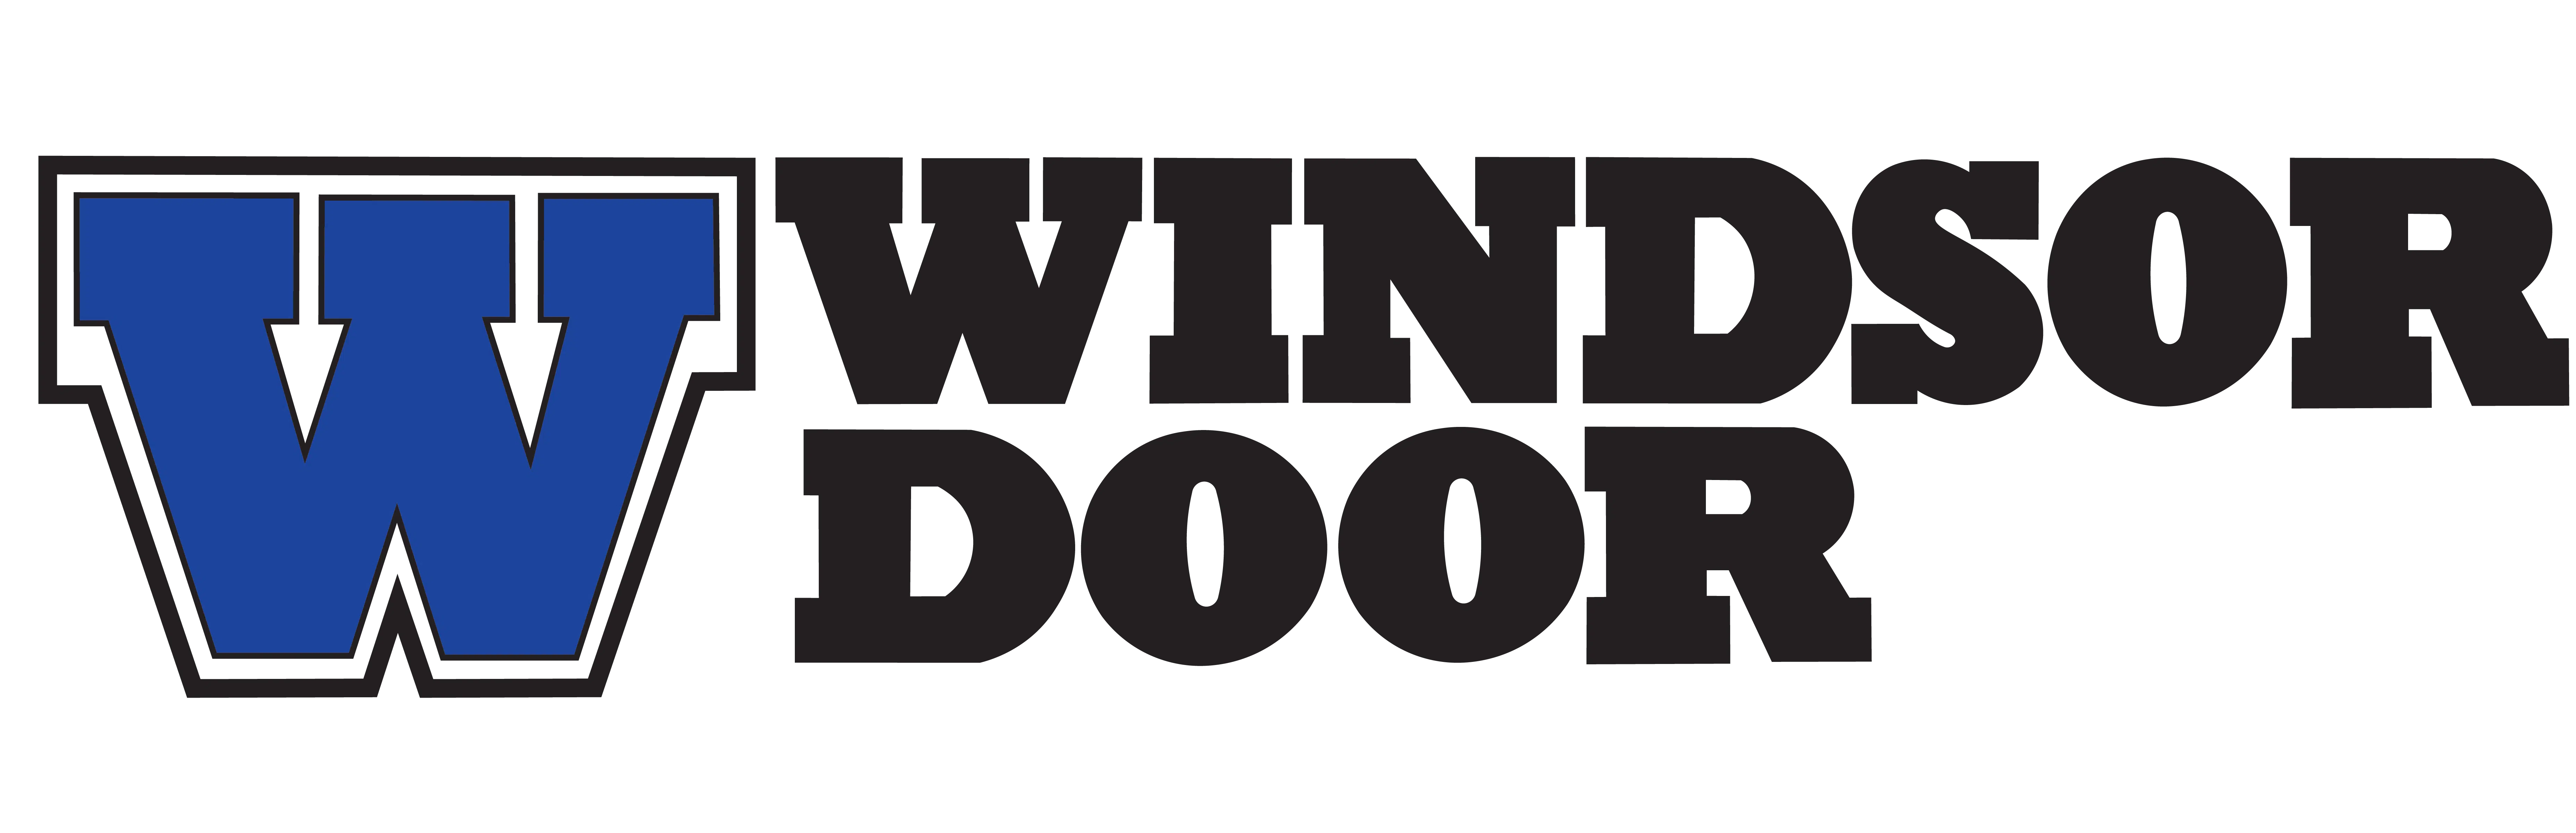 windsor_door 